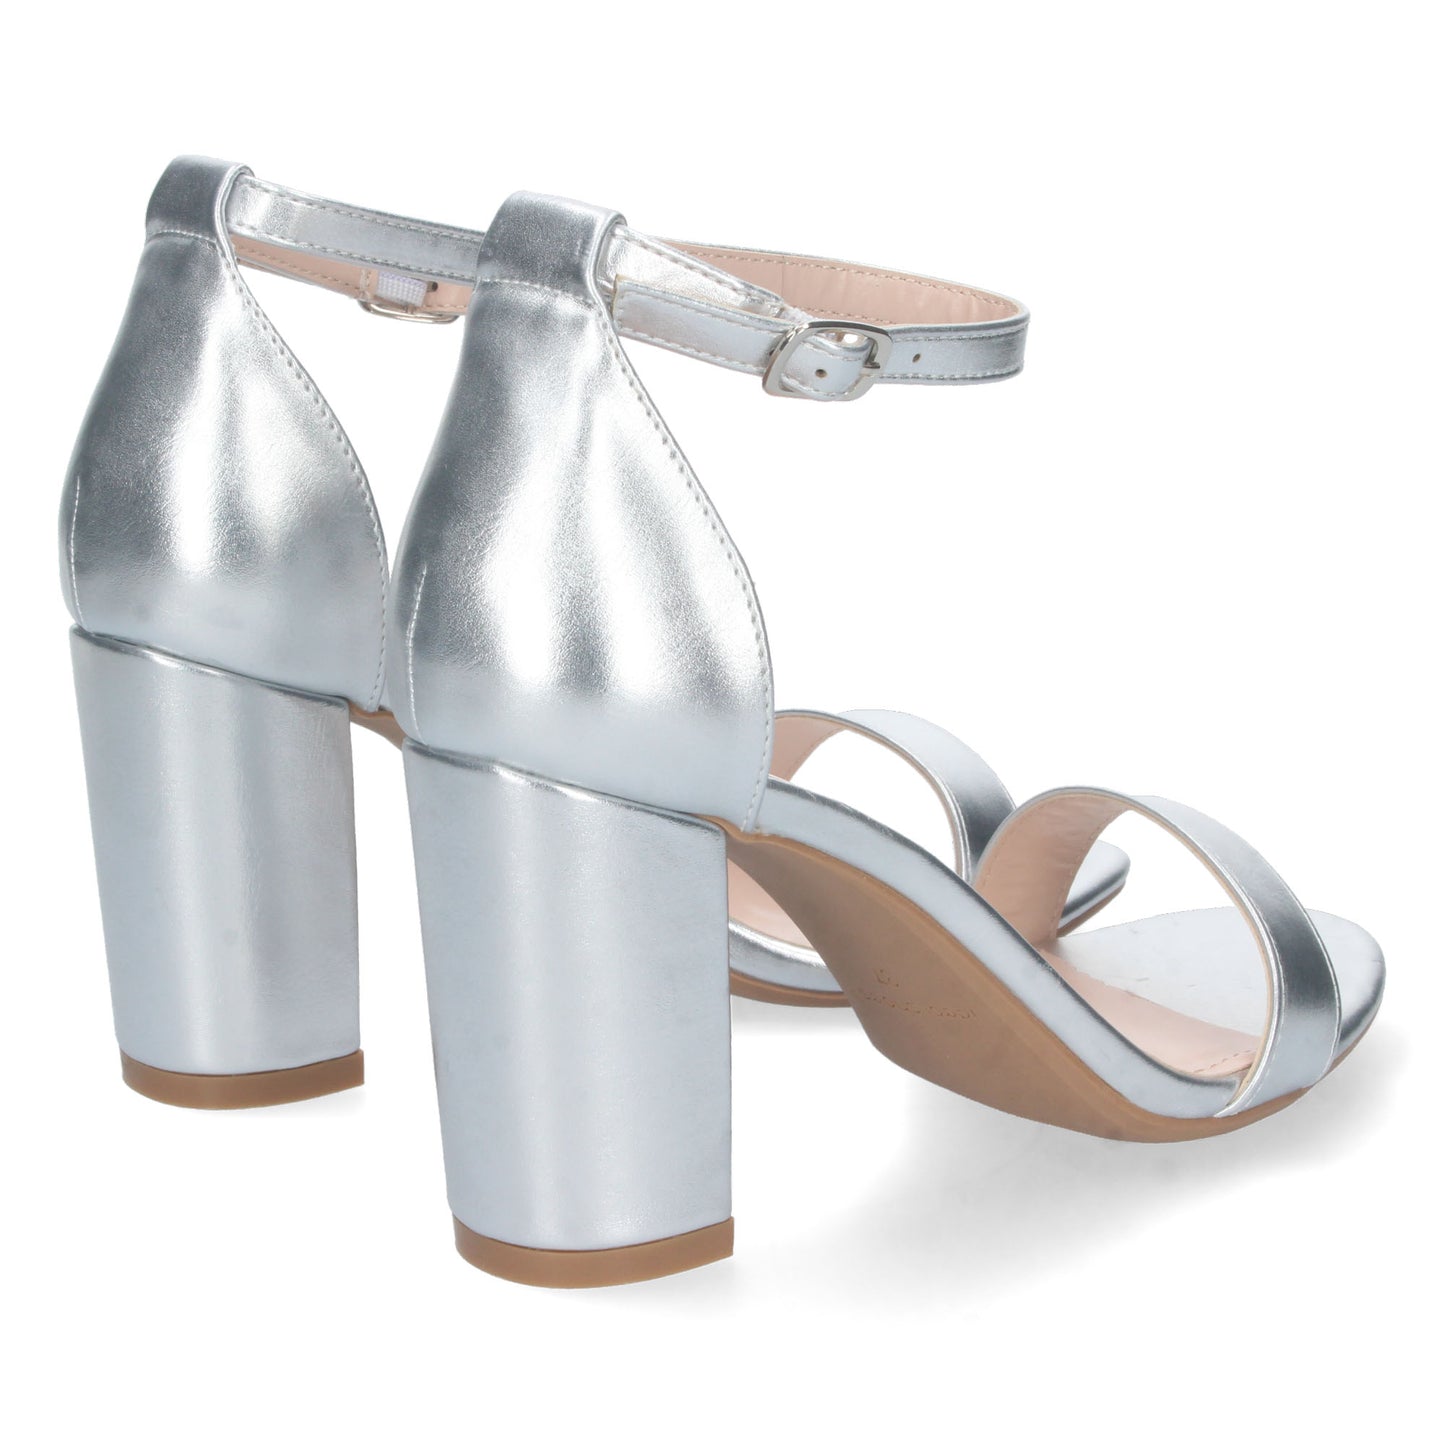 Sandalia de Tacon Alto para Mujer  Comoda  con Pala Fina Simple  Estilo Ankle Strap  y Cierre de Hebilla